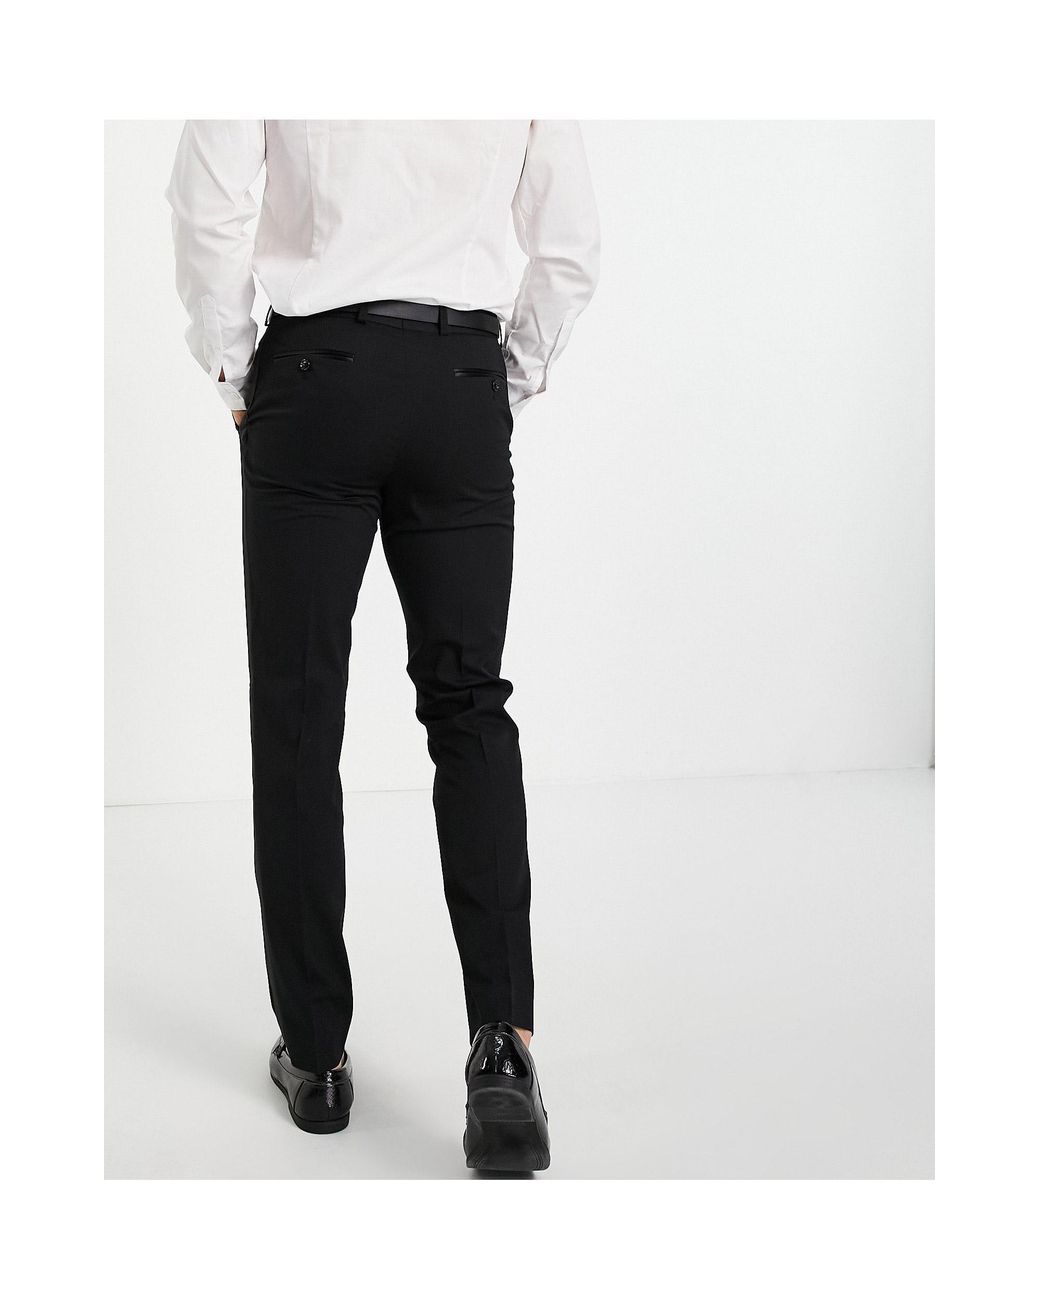 George Black Polyester Pleated Tuxedo Pants  Buy4LessTuxedocom